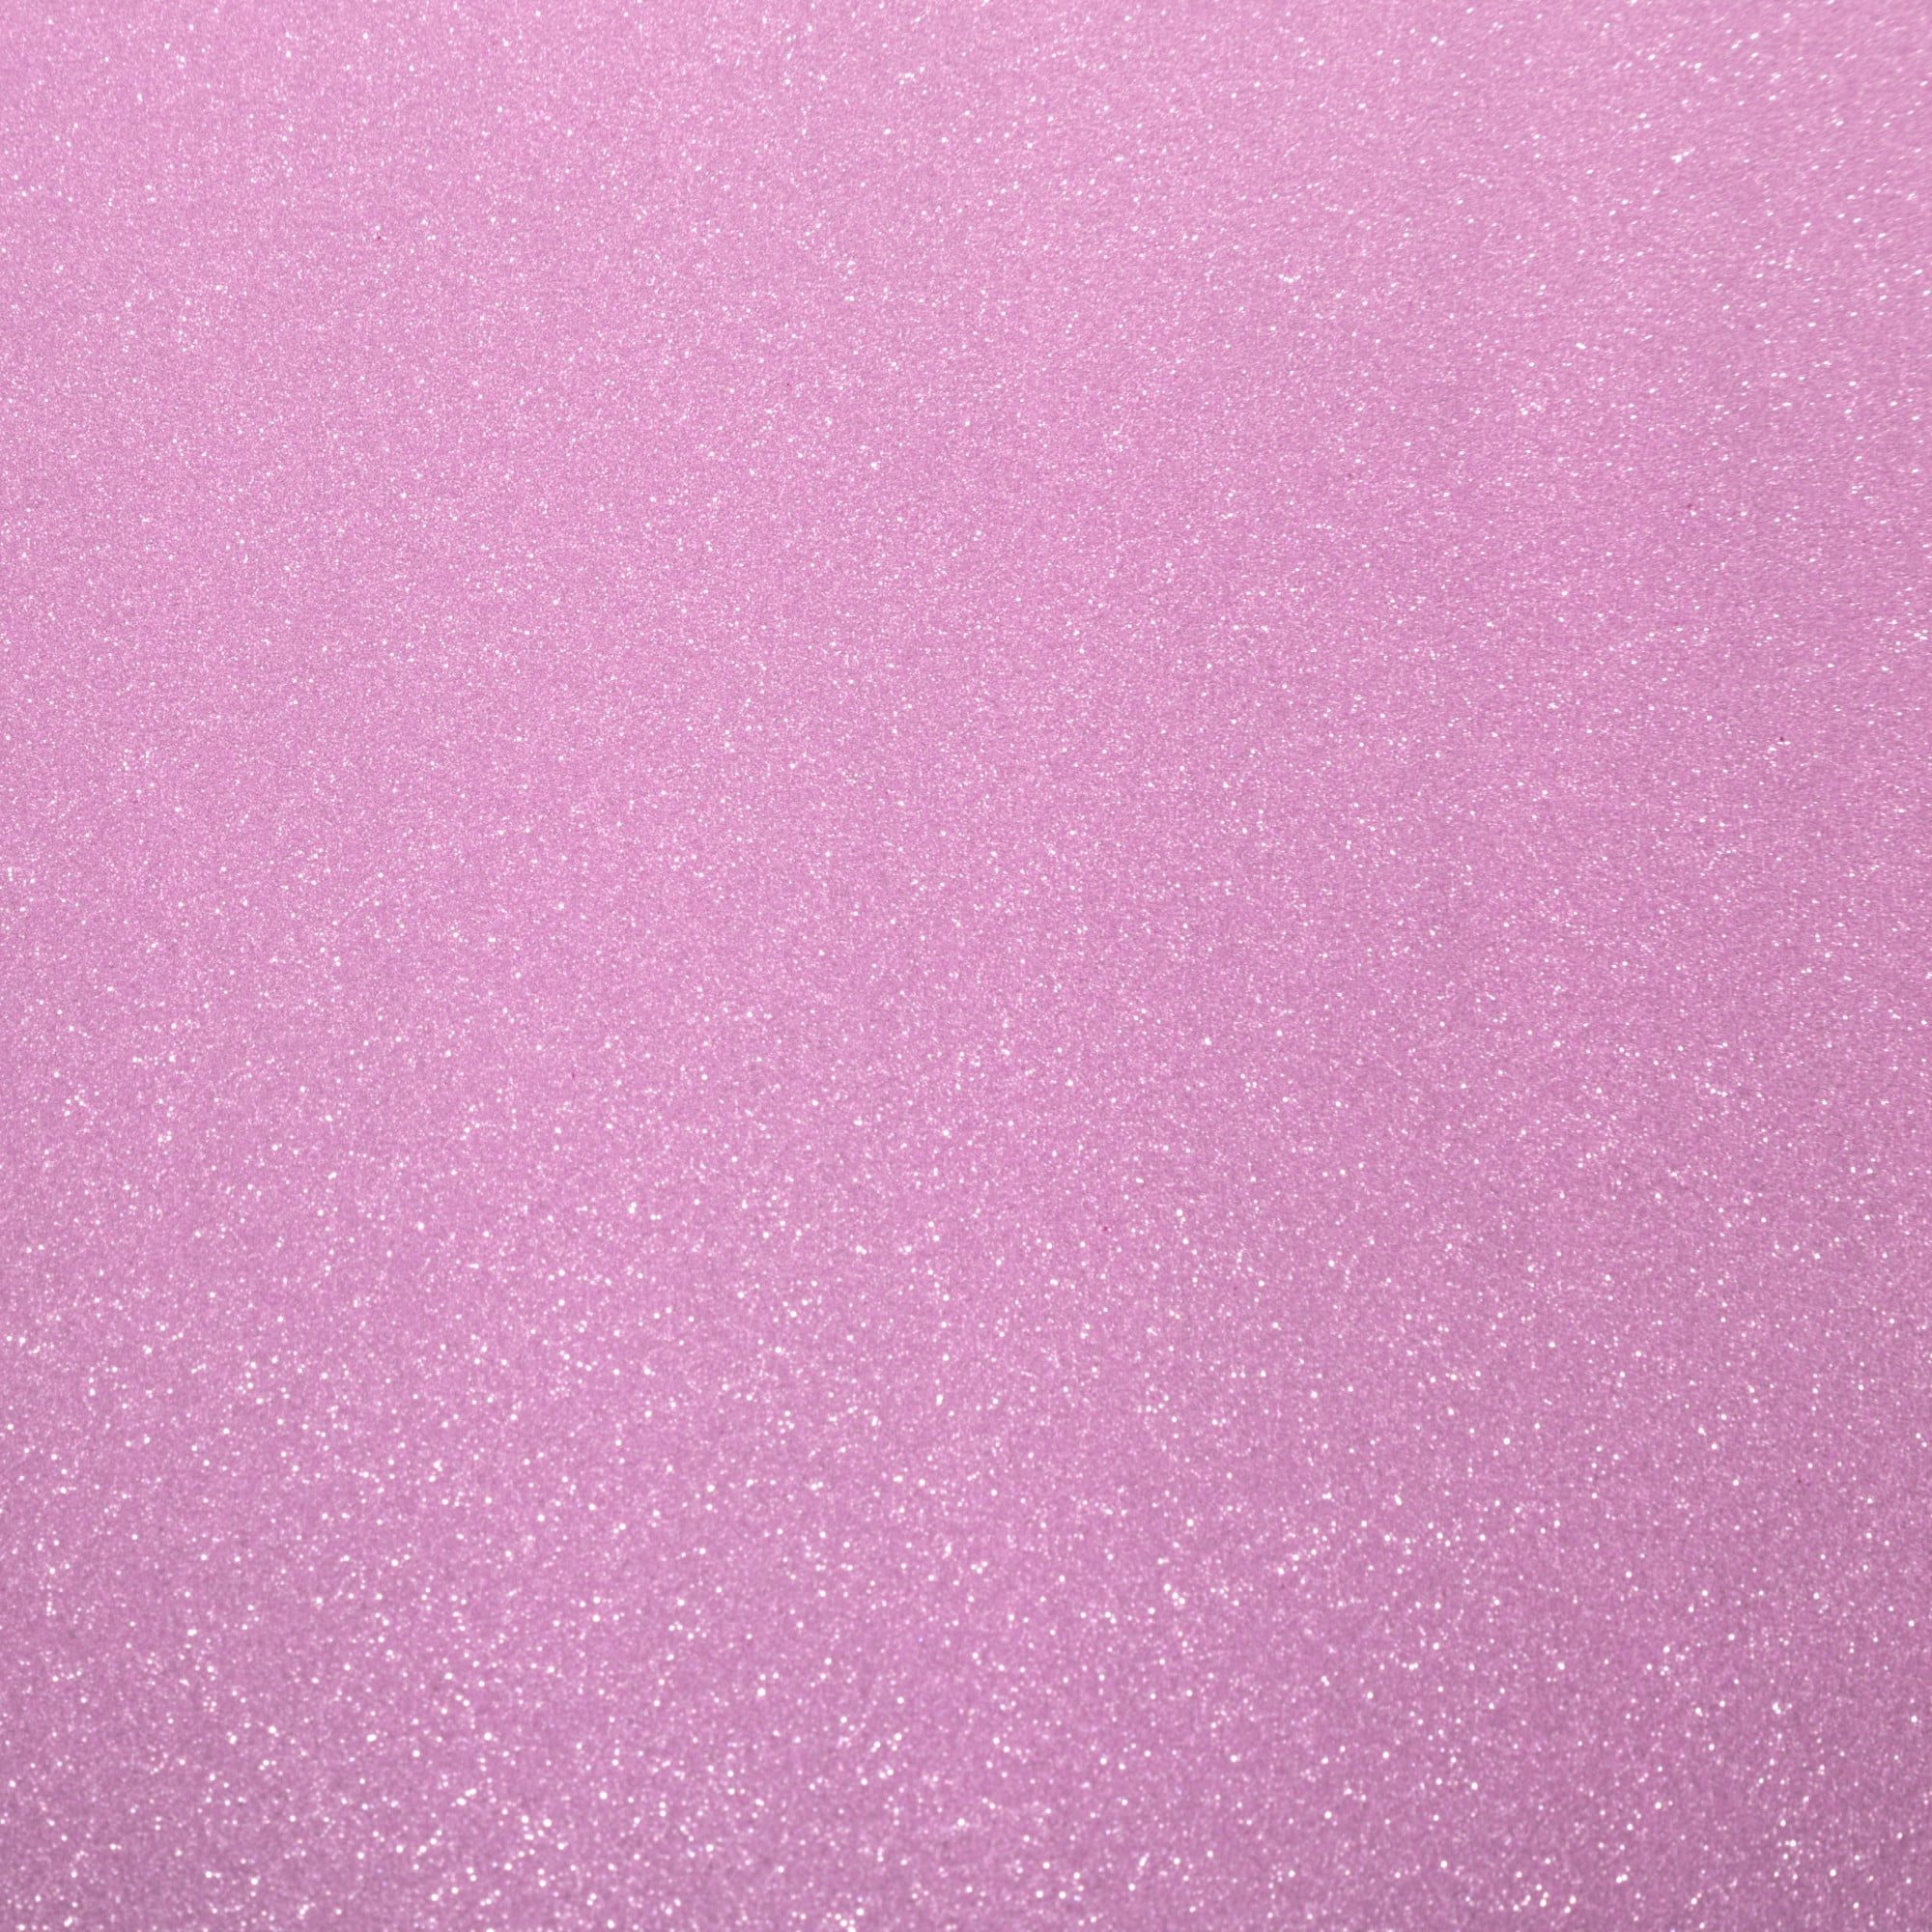 Cricut Joy Smart Vinyl Permanent Party Pink Crystal Glossy 5.5 x 48 - Lot  of 2